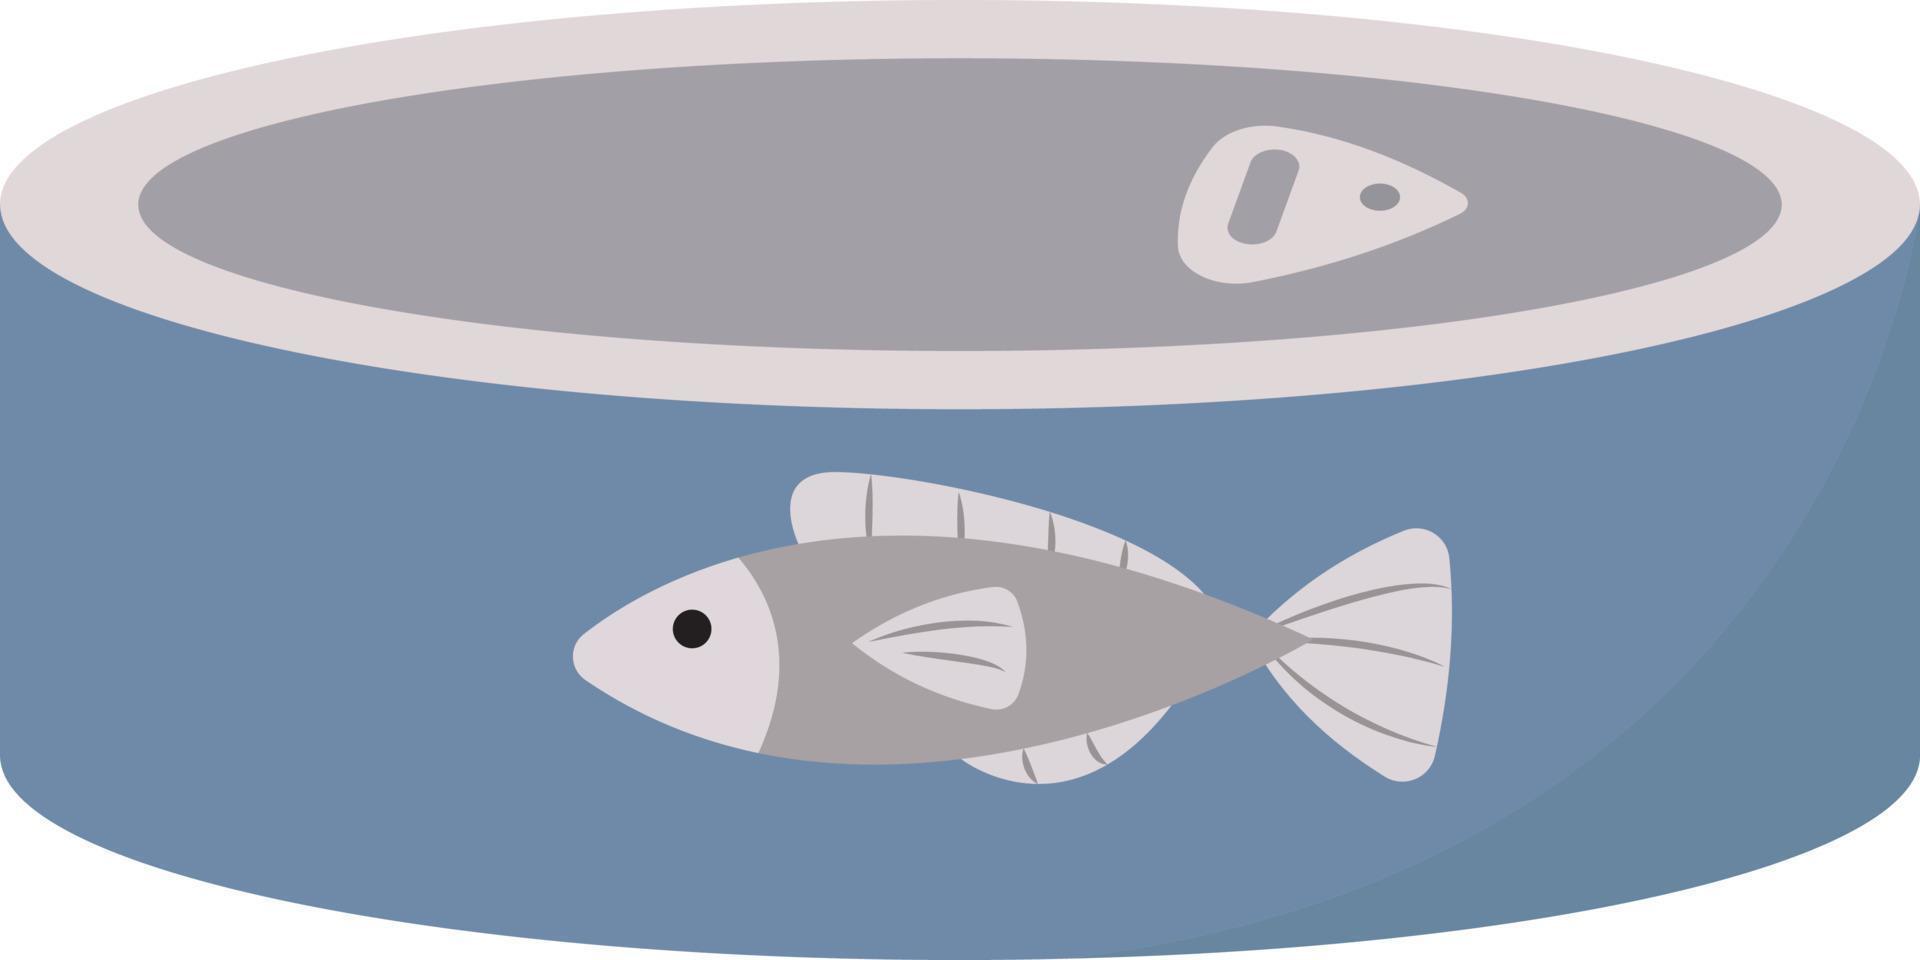 Lata de pescado azul, ilustración, vector sobre fondo blanco.